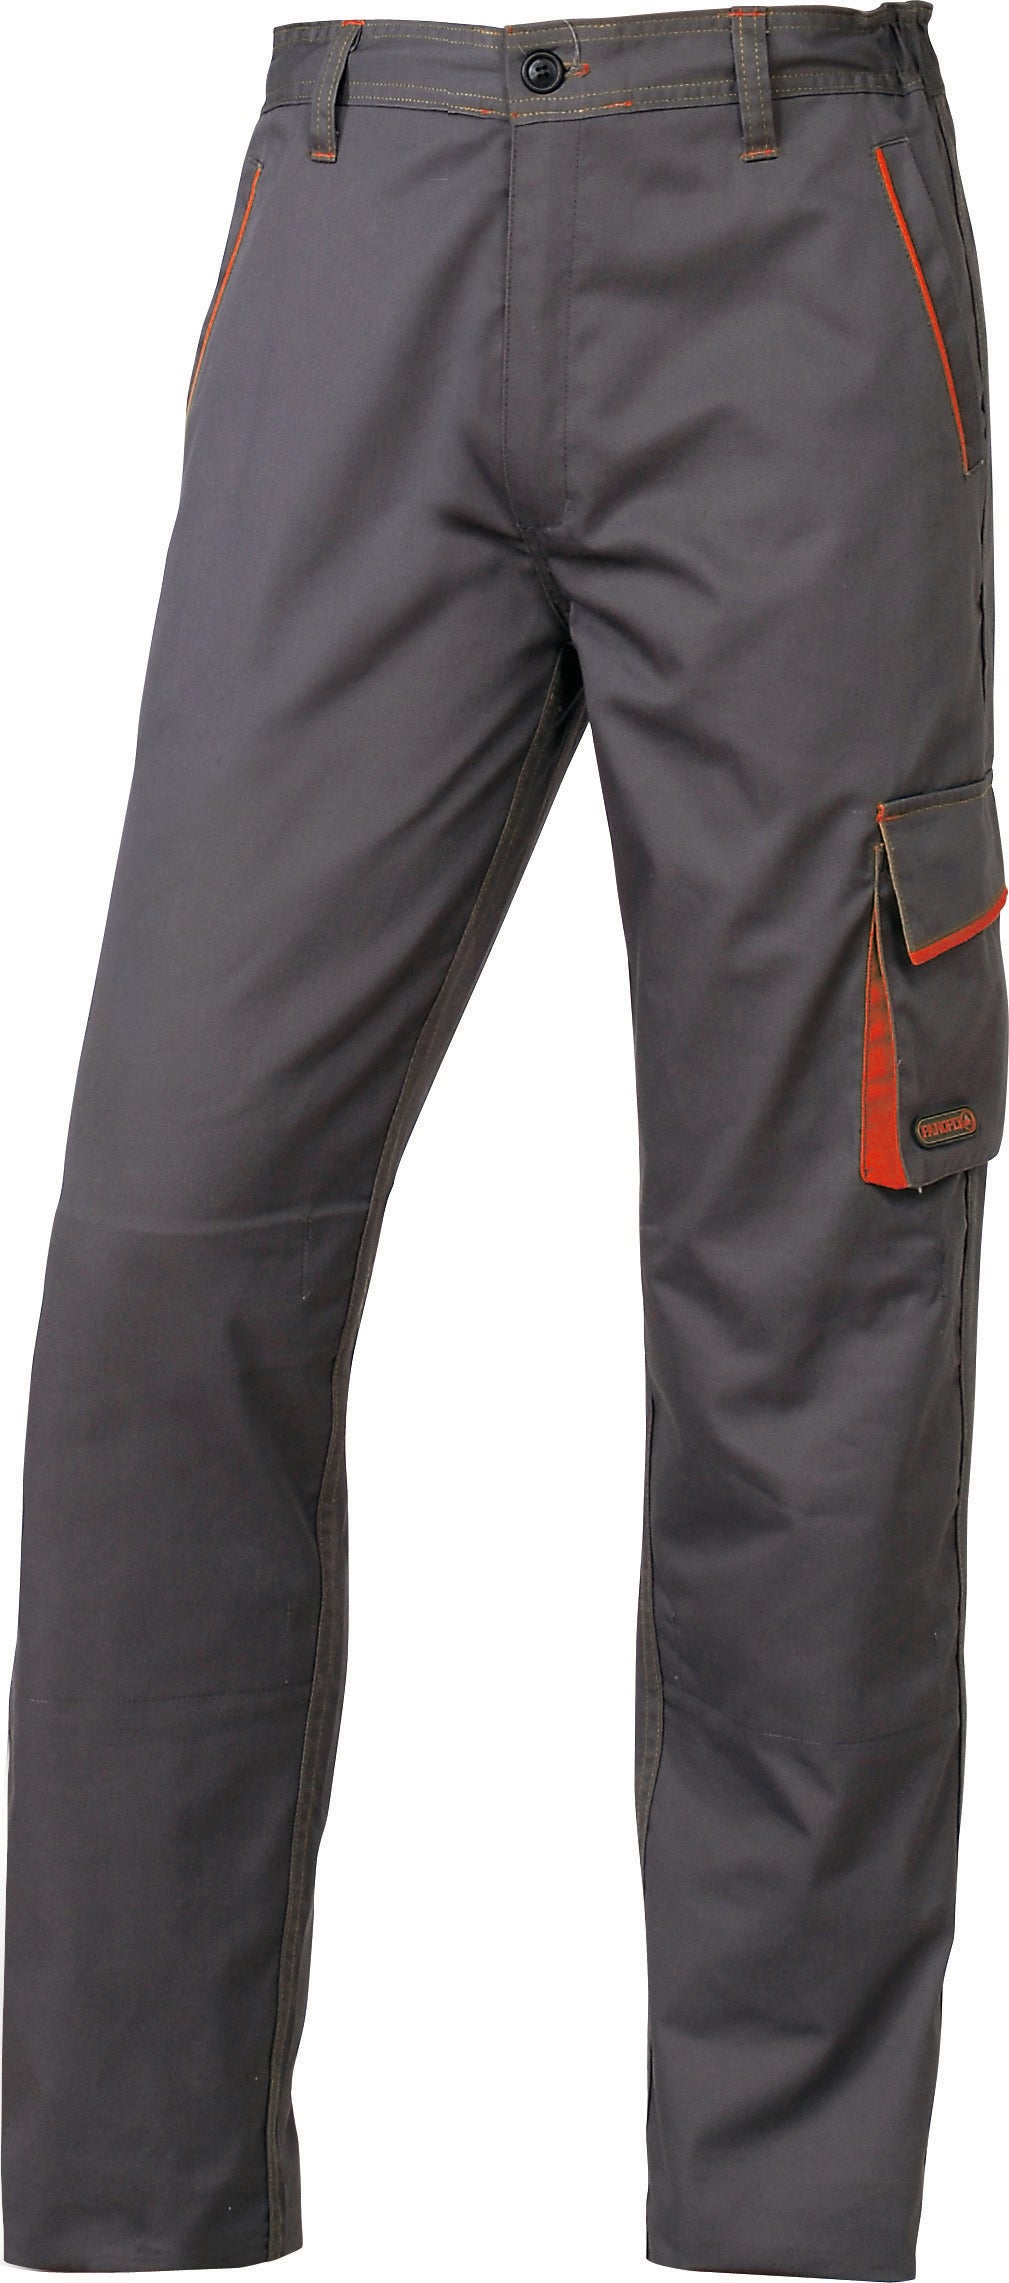 Deltaplus pantalone m6pan col. grigio/arancio mis. xl - Deltaplus